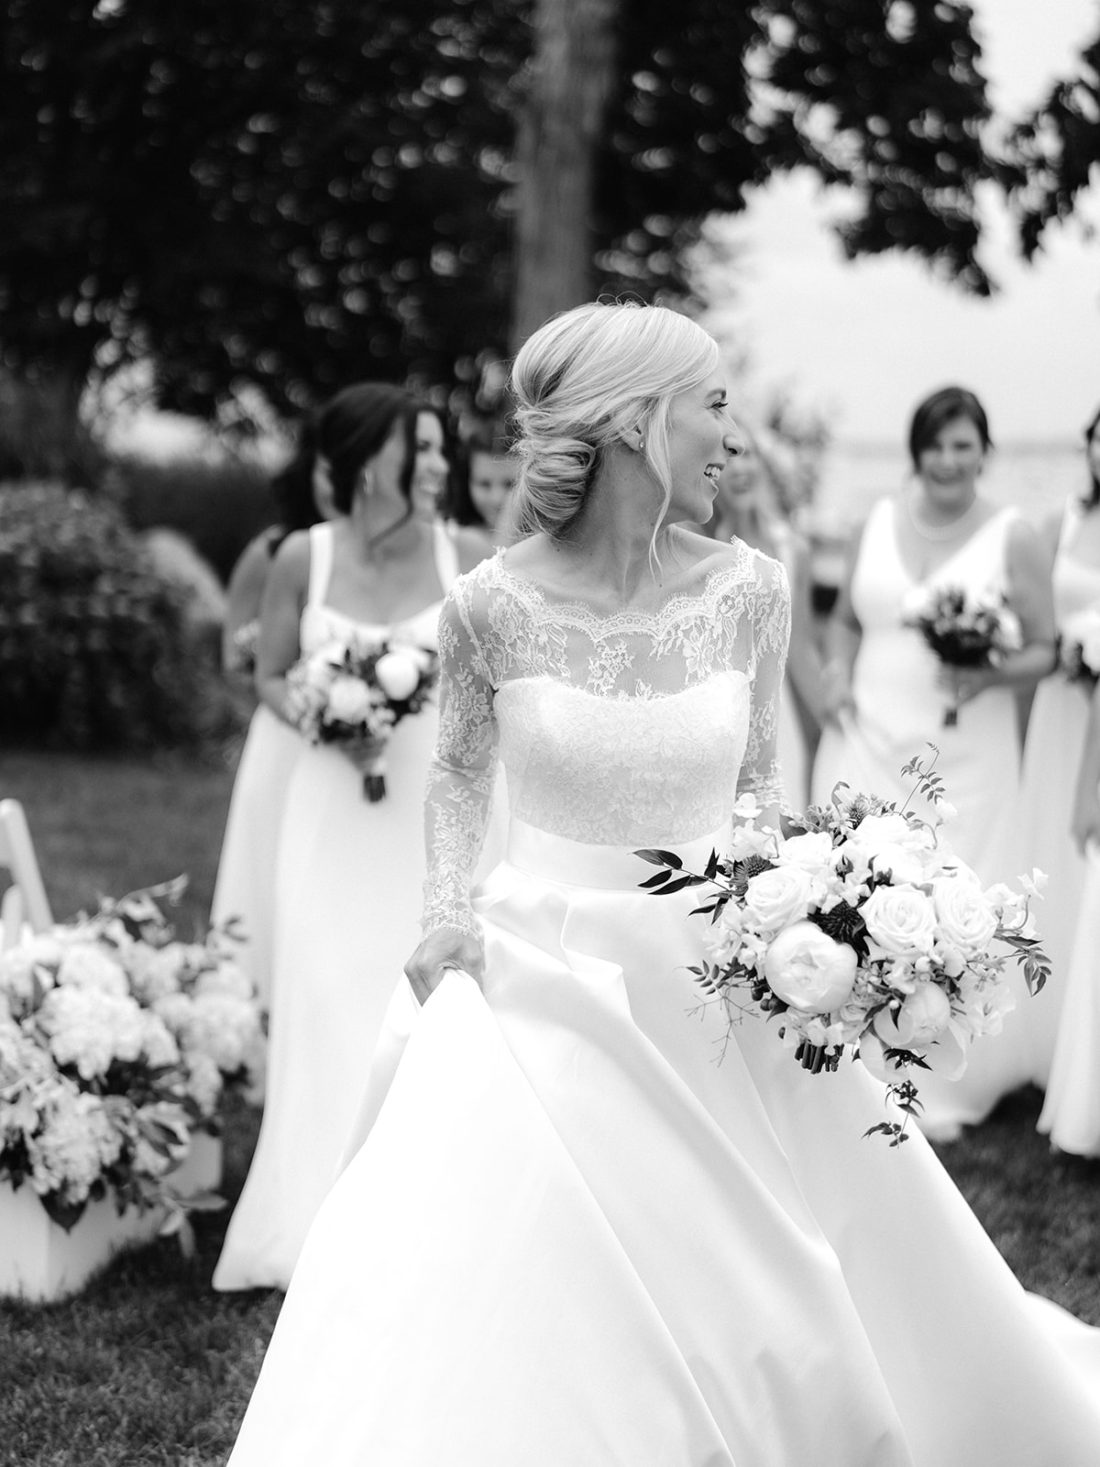 Bridal Bouquet - Greenwich Orchids - Wedding Flowers - Wedding Inspiration - Martha Stewart Weddings - Over The Moon Weddings - Vogue Wedding - Vogue Weddings 